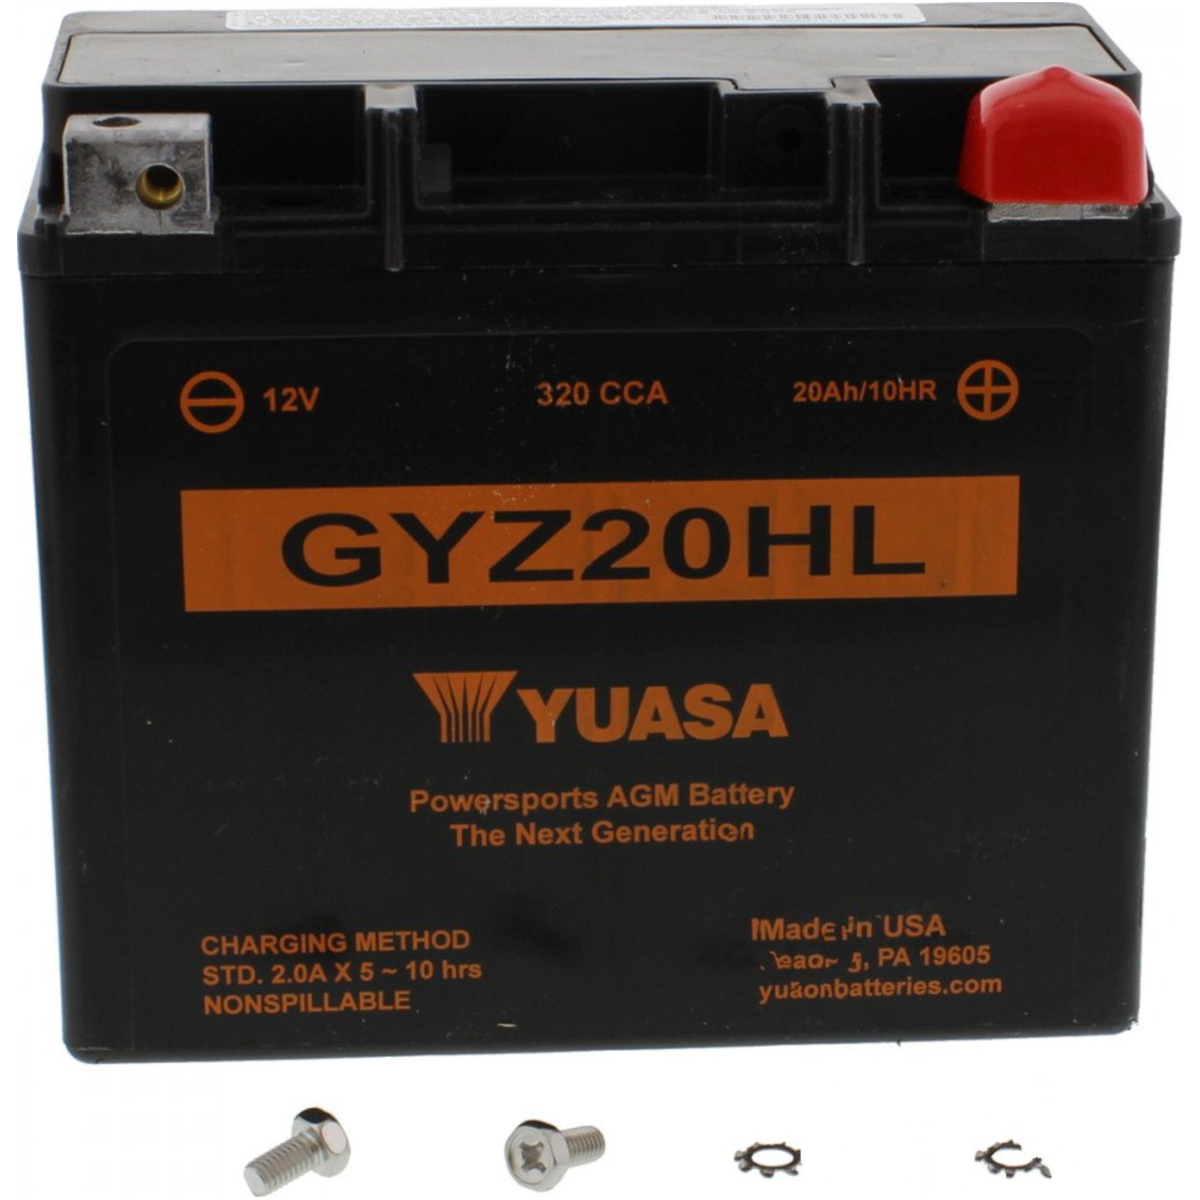 Yuasa gyz20hl usa(wc) motorradbatterie gyz20hl wet von Yuasa